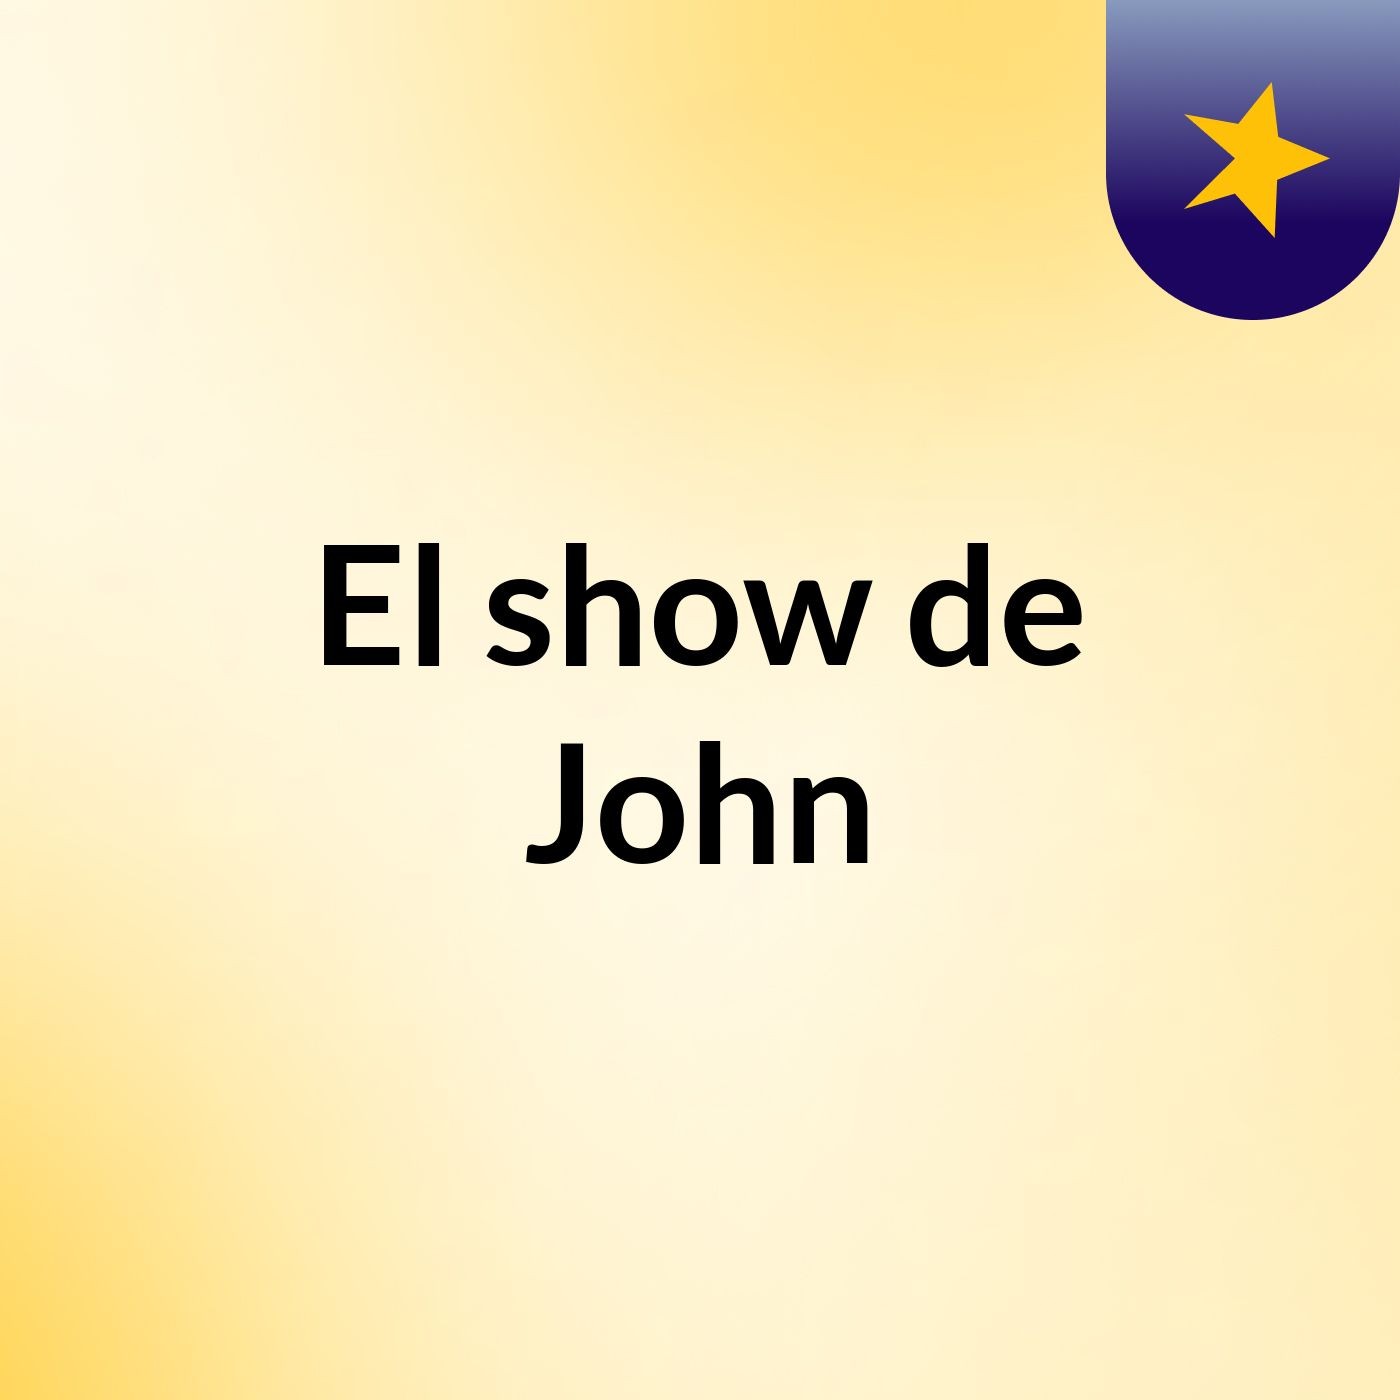 El show de John